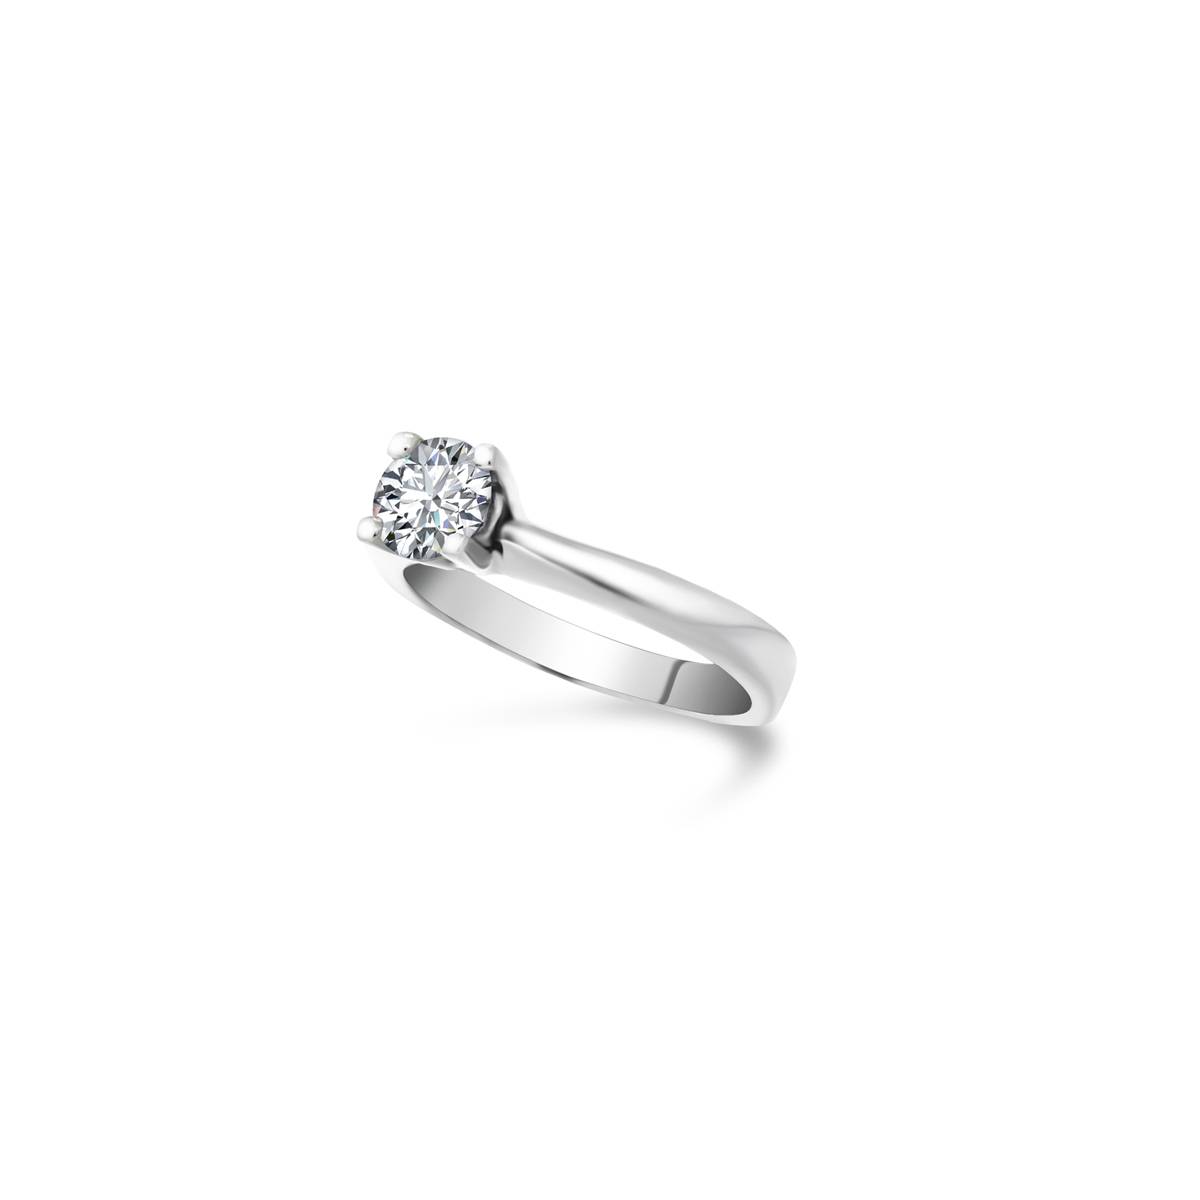 Fehér arany solitaire gyűrű gyémánt kővel